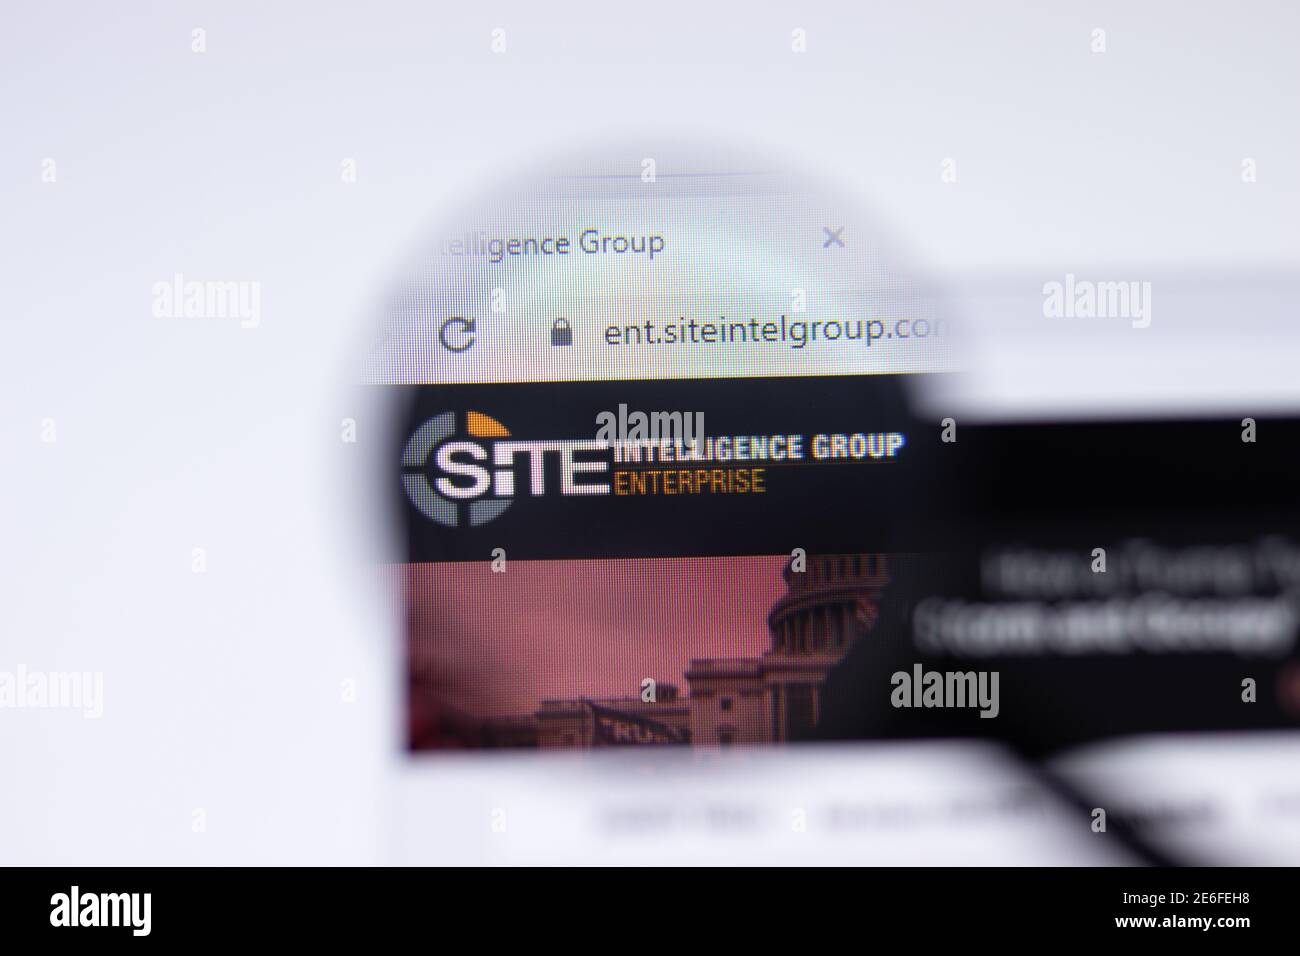 San Petersburgo, Rusia - 28 de enero de 2021: PÁGINA web DEL grupo SITE Intelligence con primer plano del logotipo, editorial ilustrativa Foto de stock